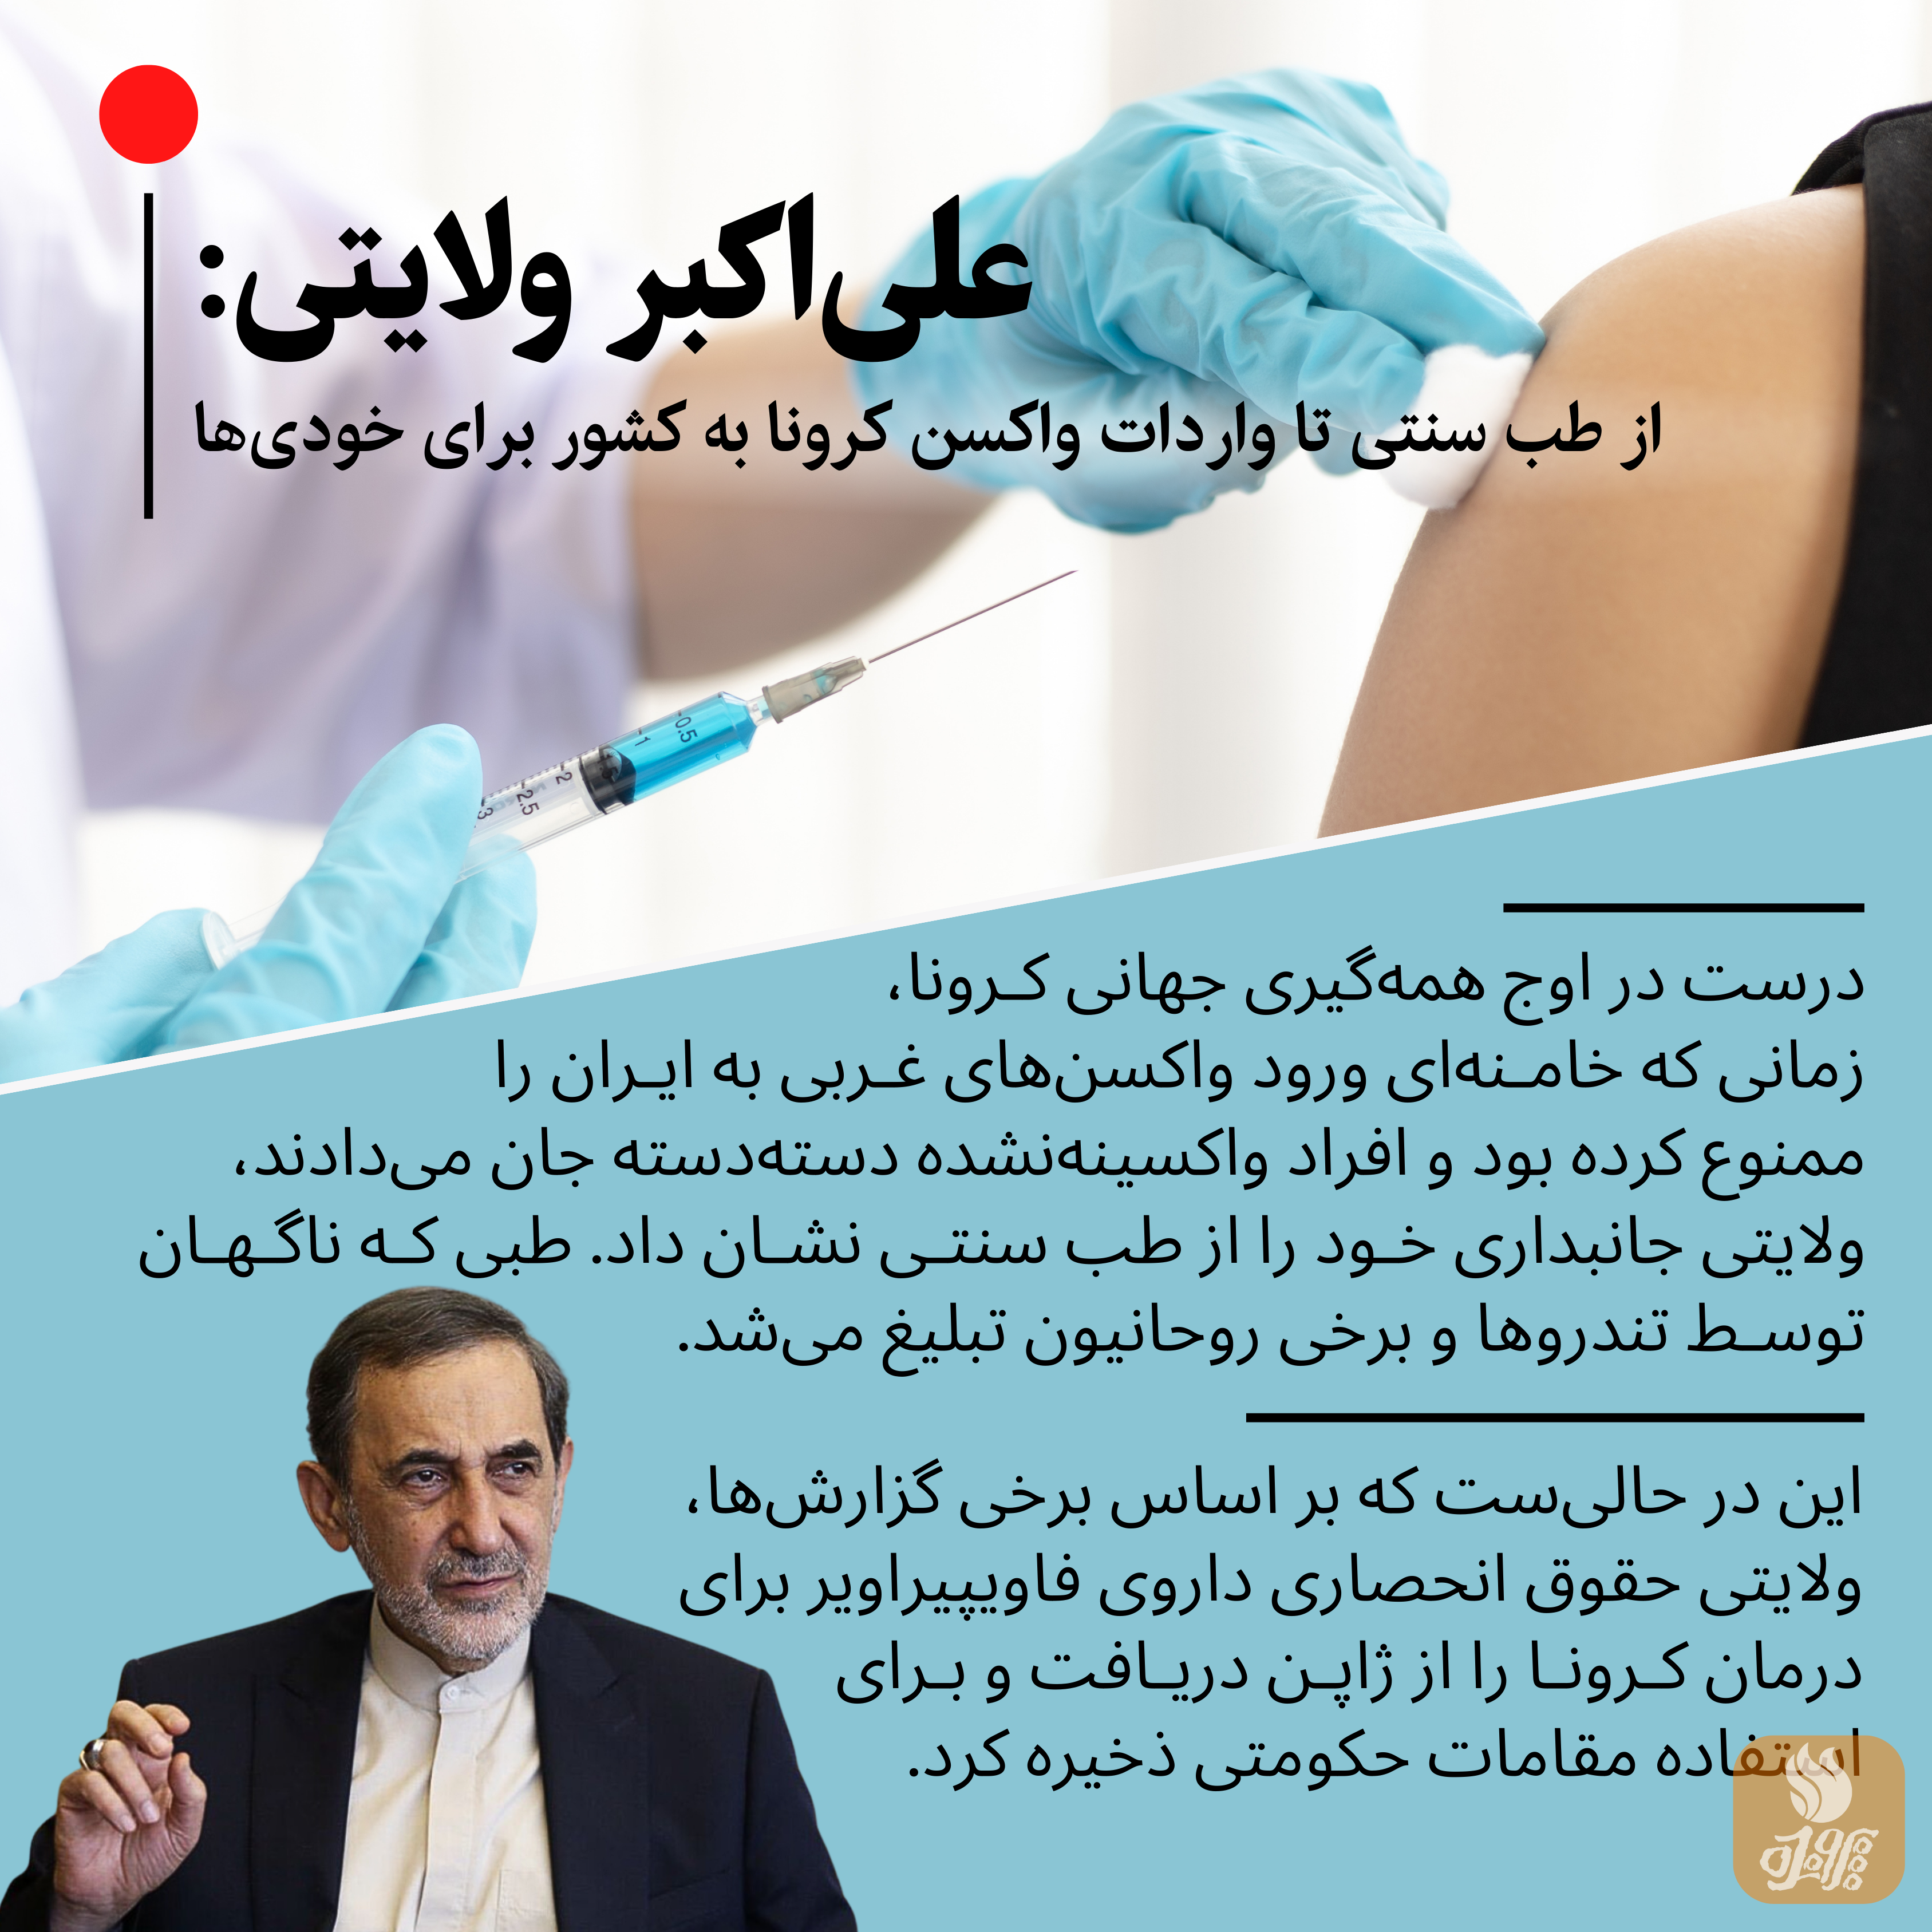 این دیپلمات محبوب خامنه‌ای توانست به راحتی برای وارد سازی واکس کرونا به کشور رانت کند و به هیچکس پاسخ‌گو نباشد.